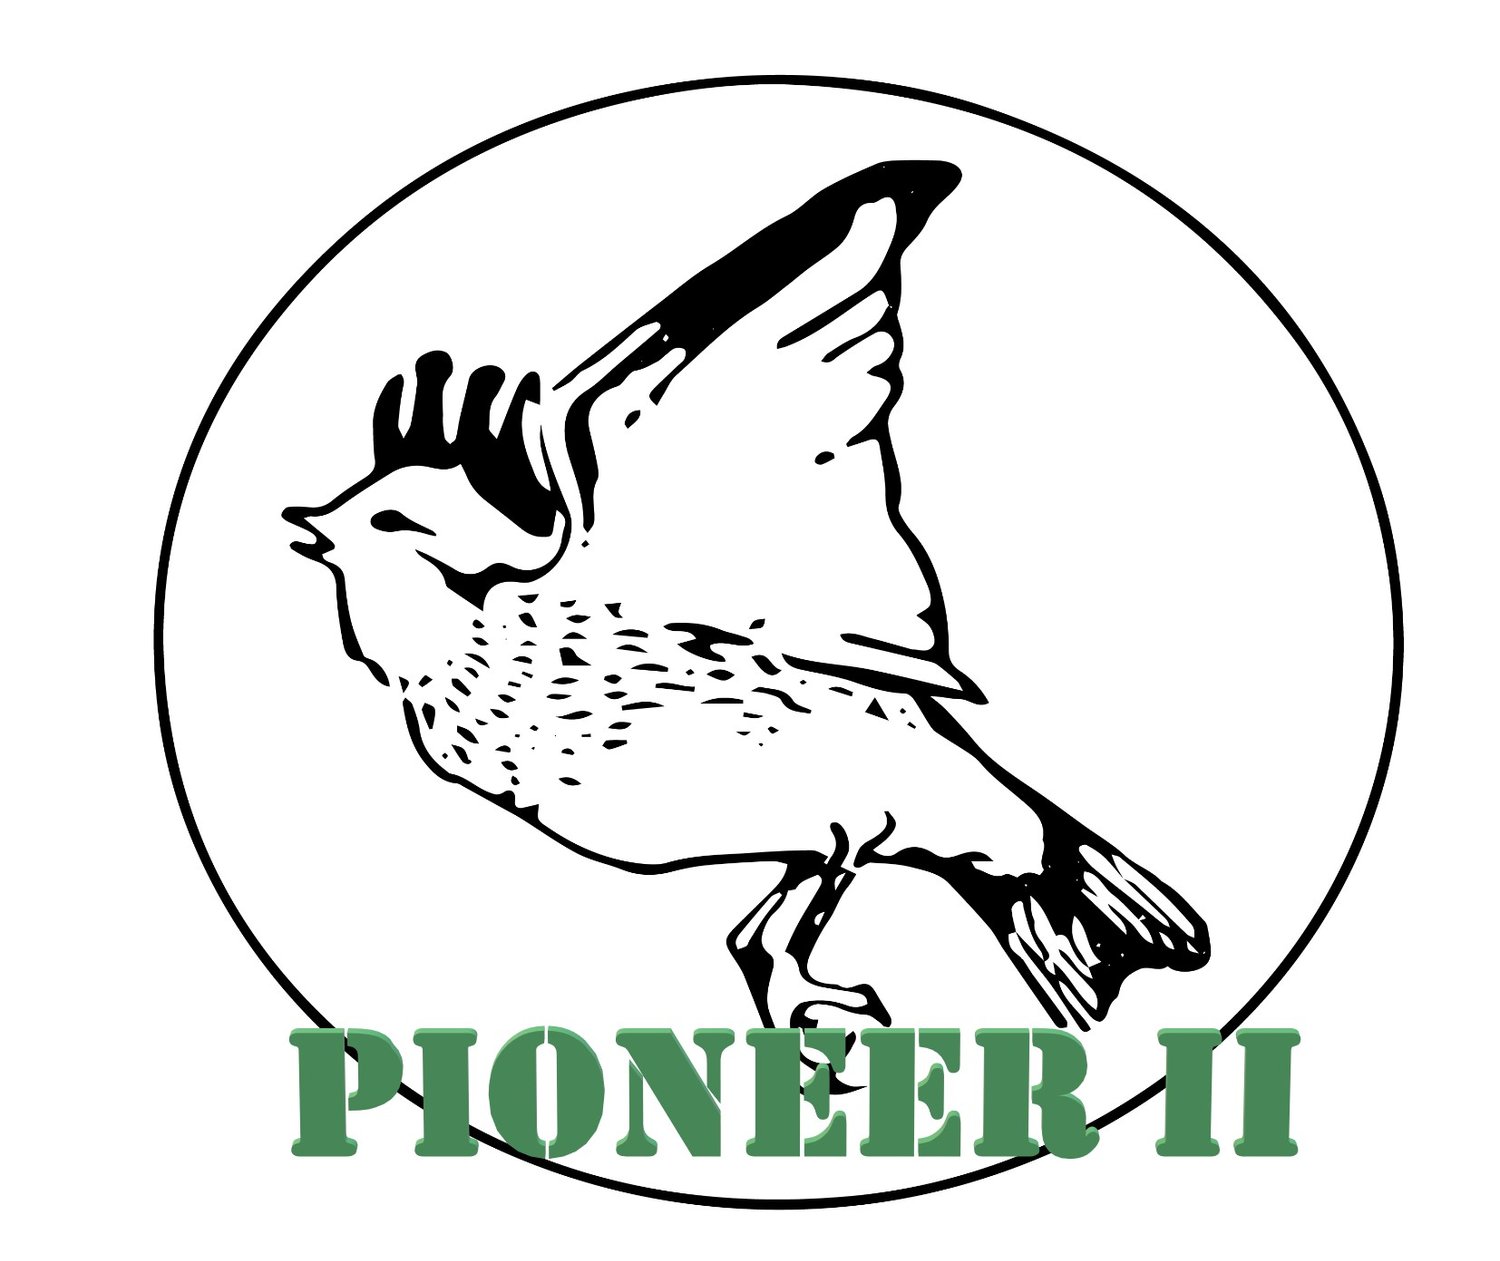  PIONEER II